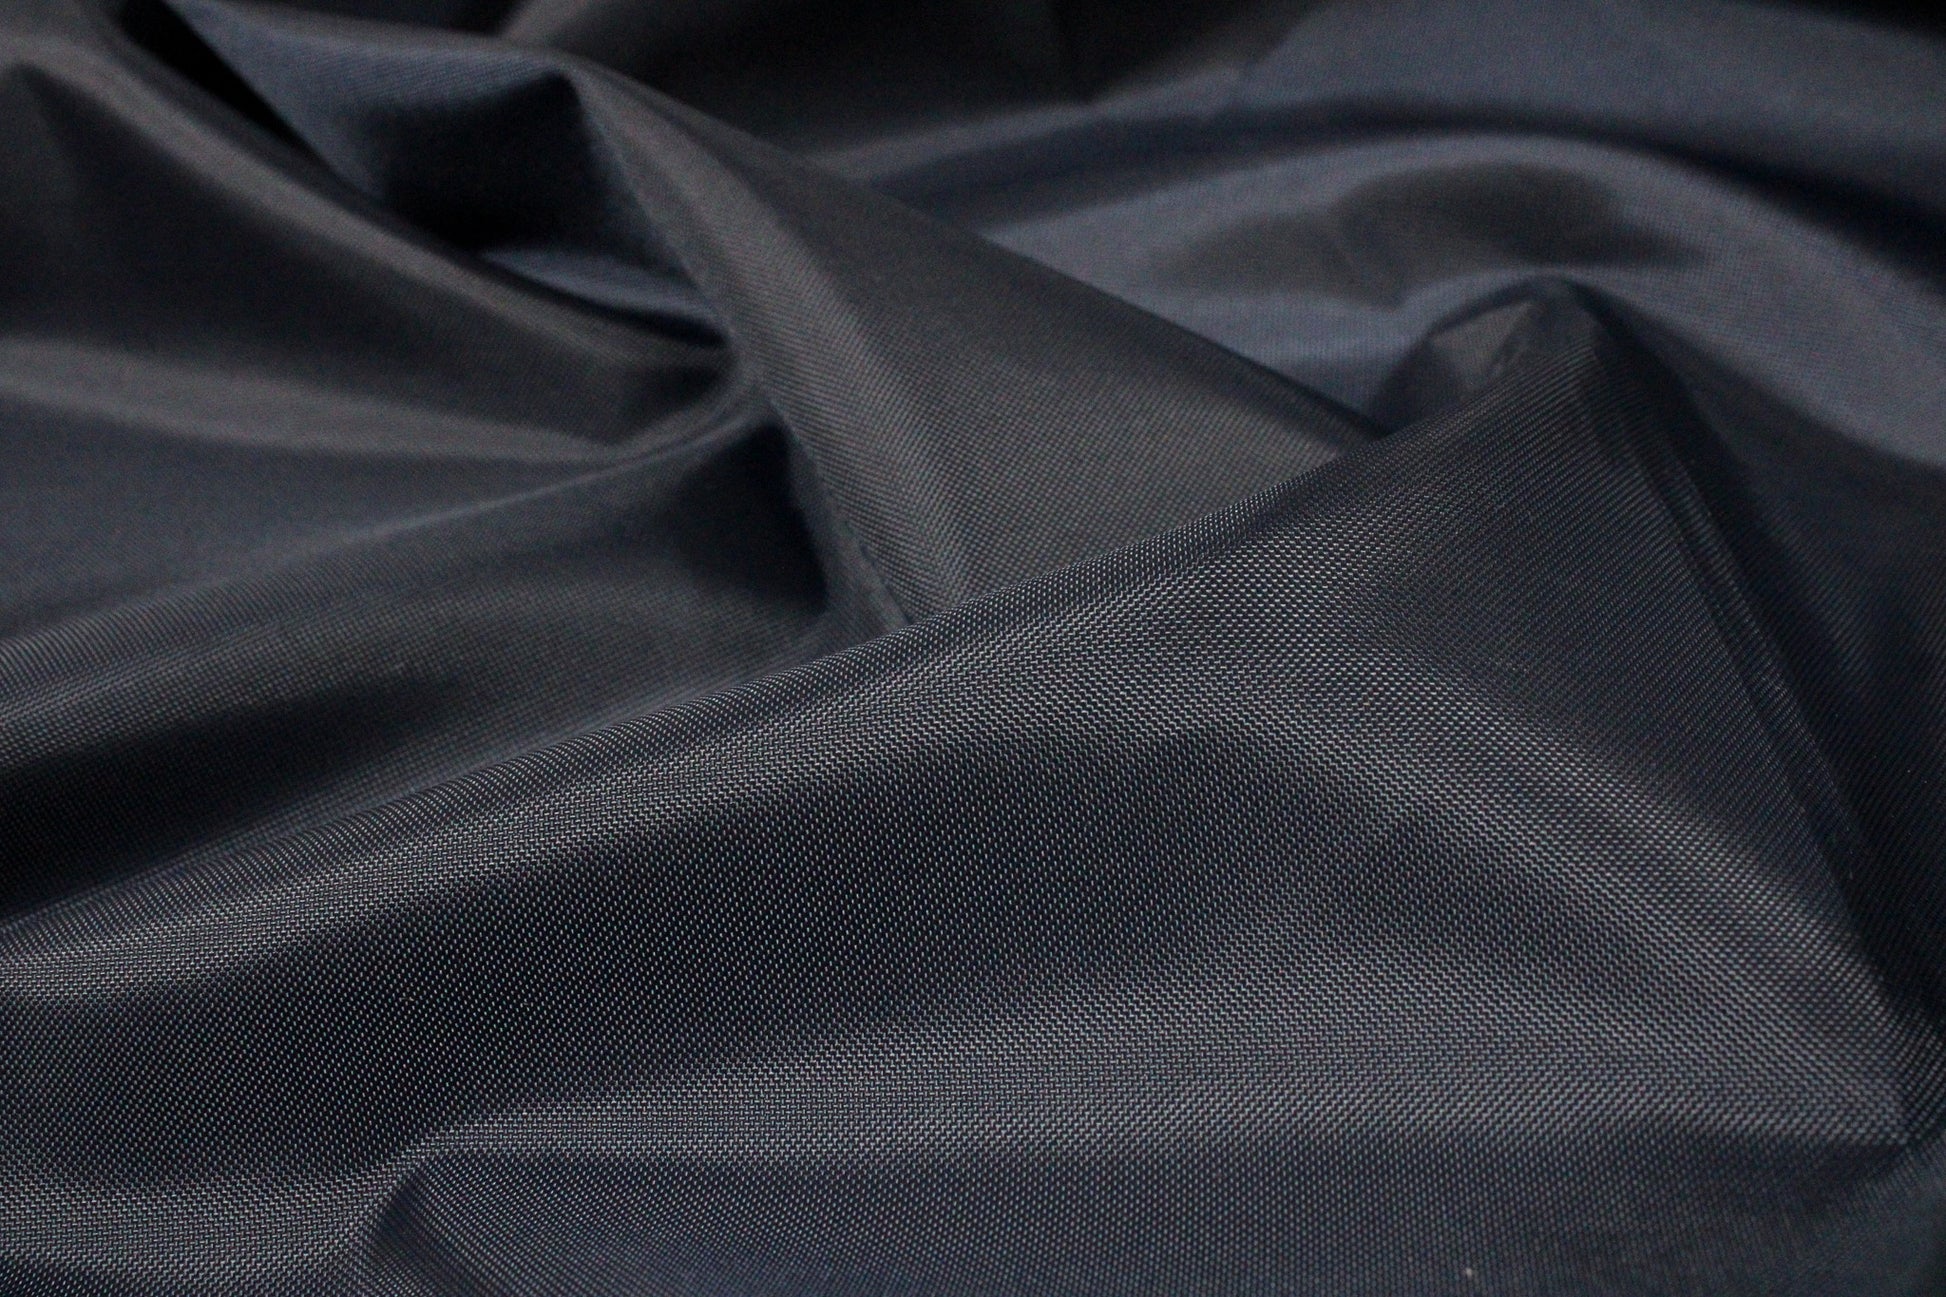 Posh Lining Fabric